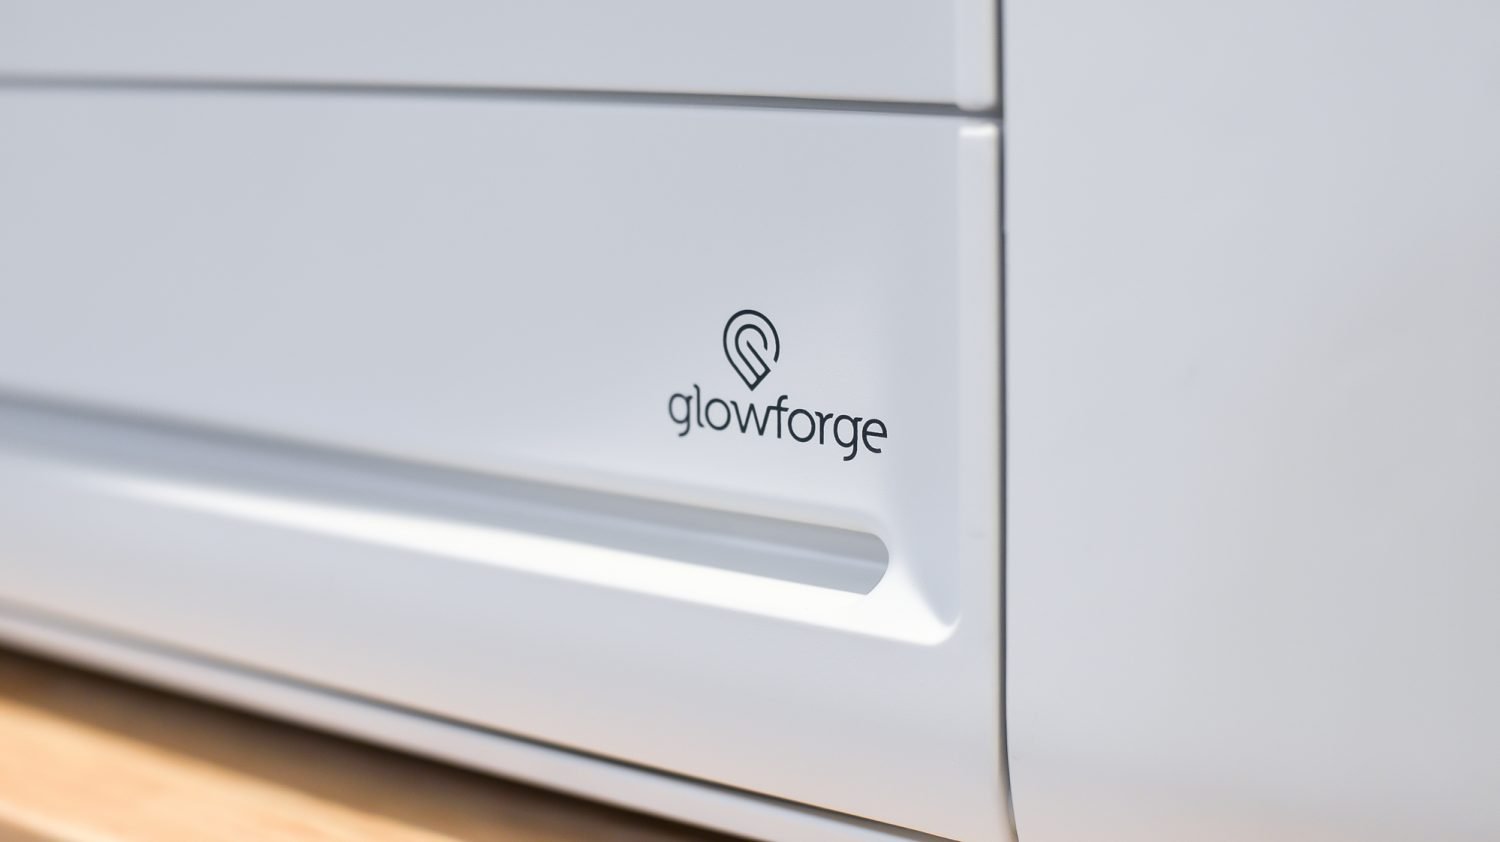 Closeup of Glowforge logo on machine.